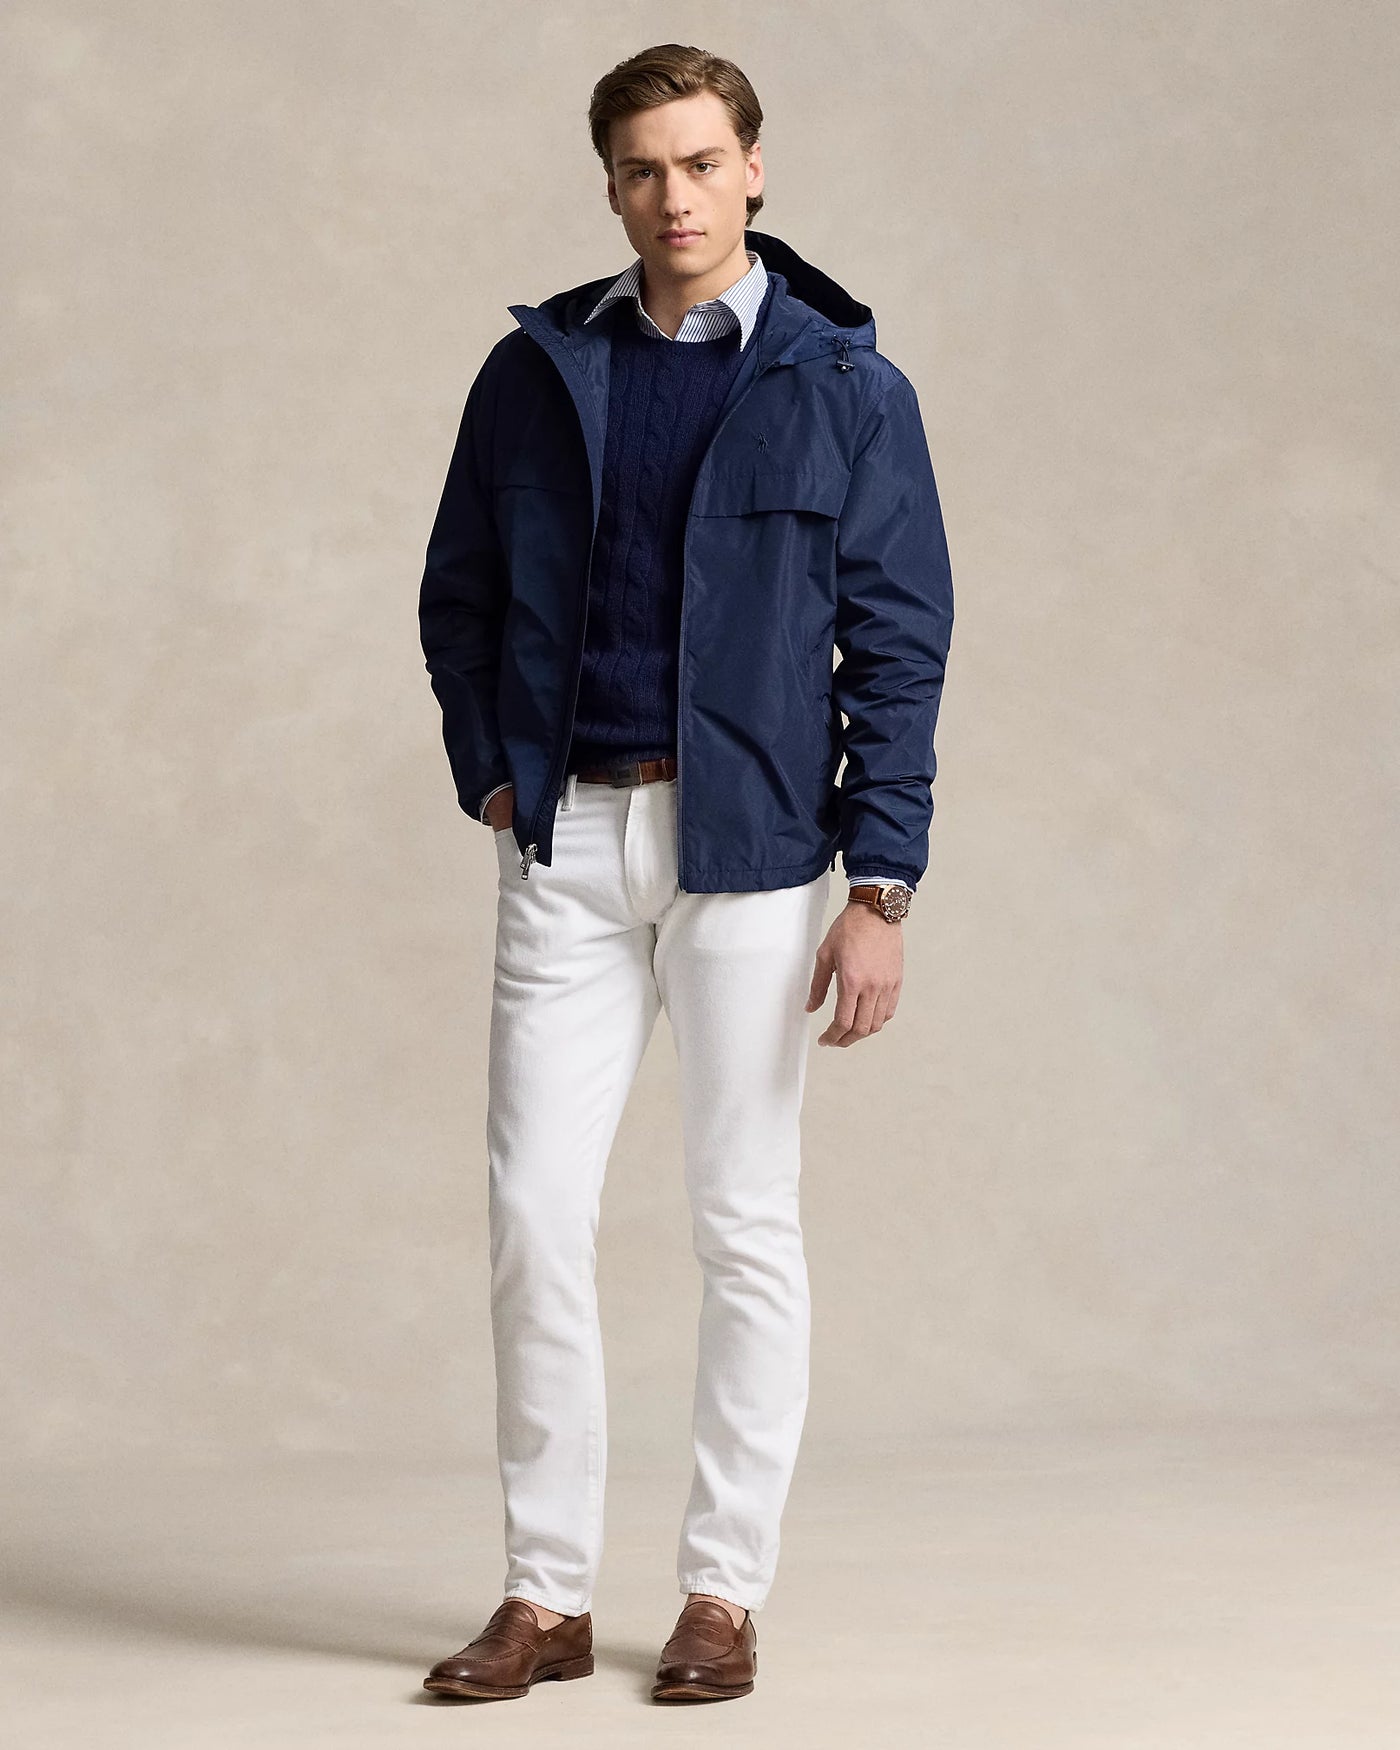 Ralph Lauren Full-Zip Hooded Jacket | Newport Navy